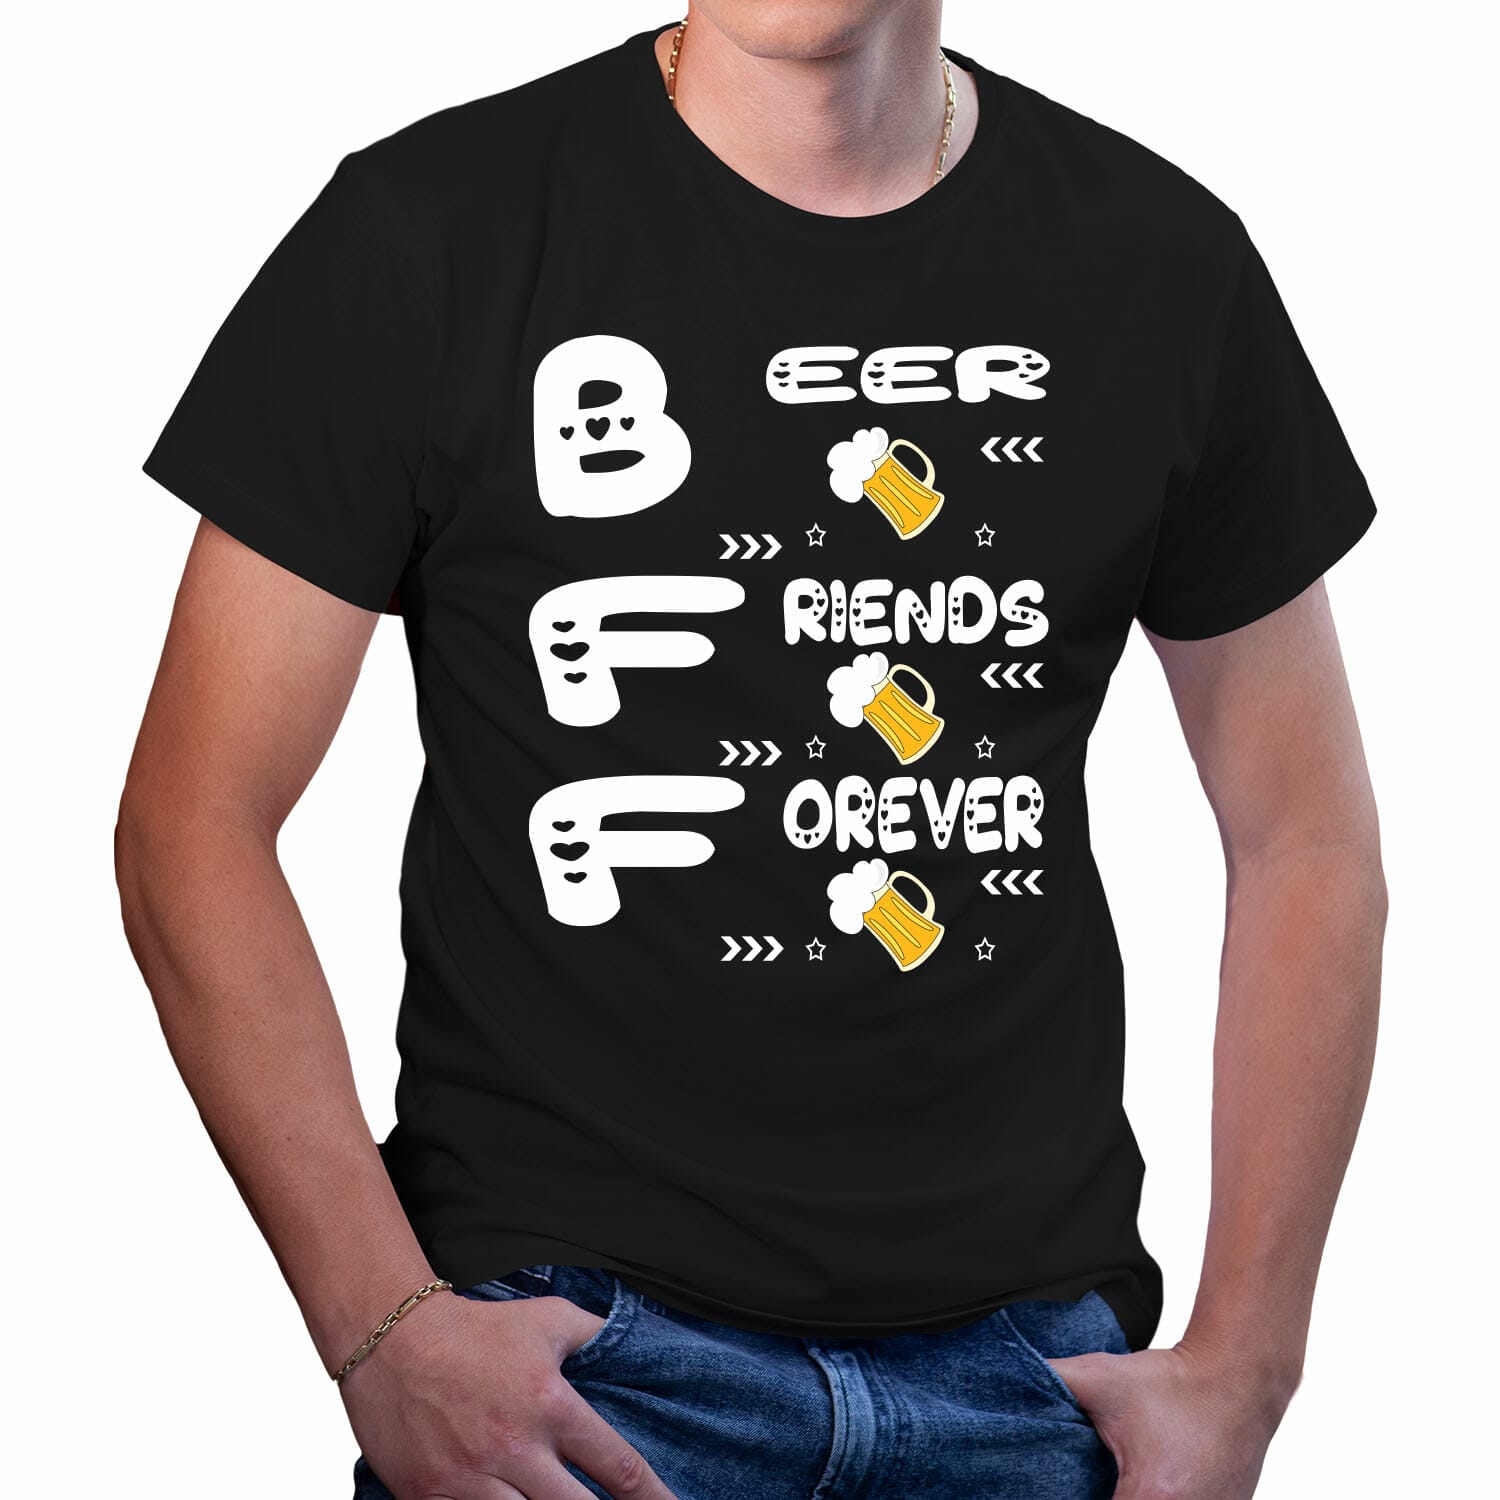 Beer friends for ever - funny tshirt design for men